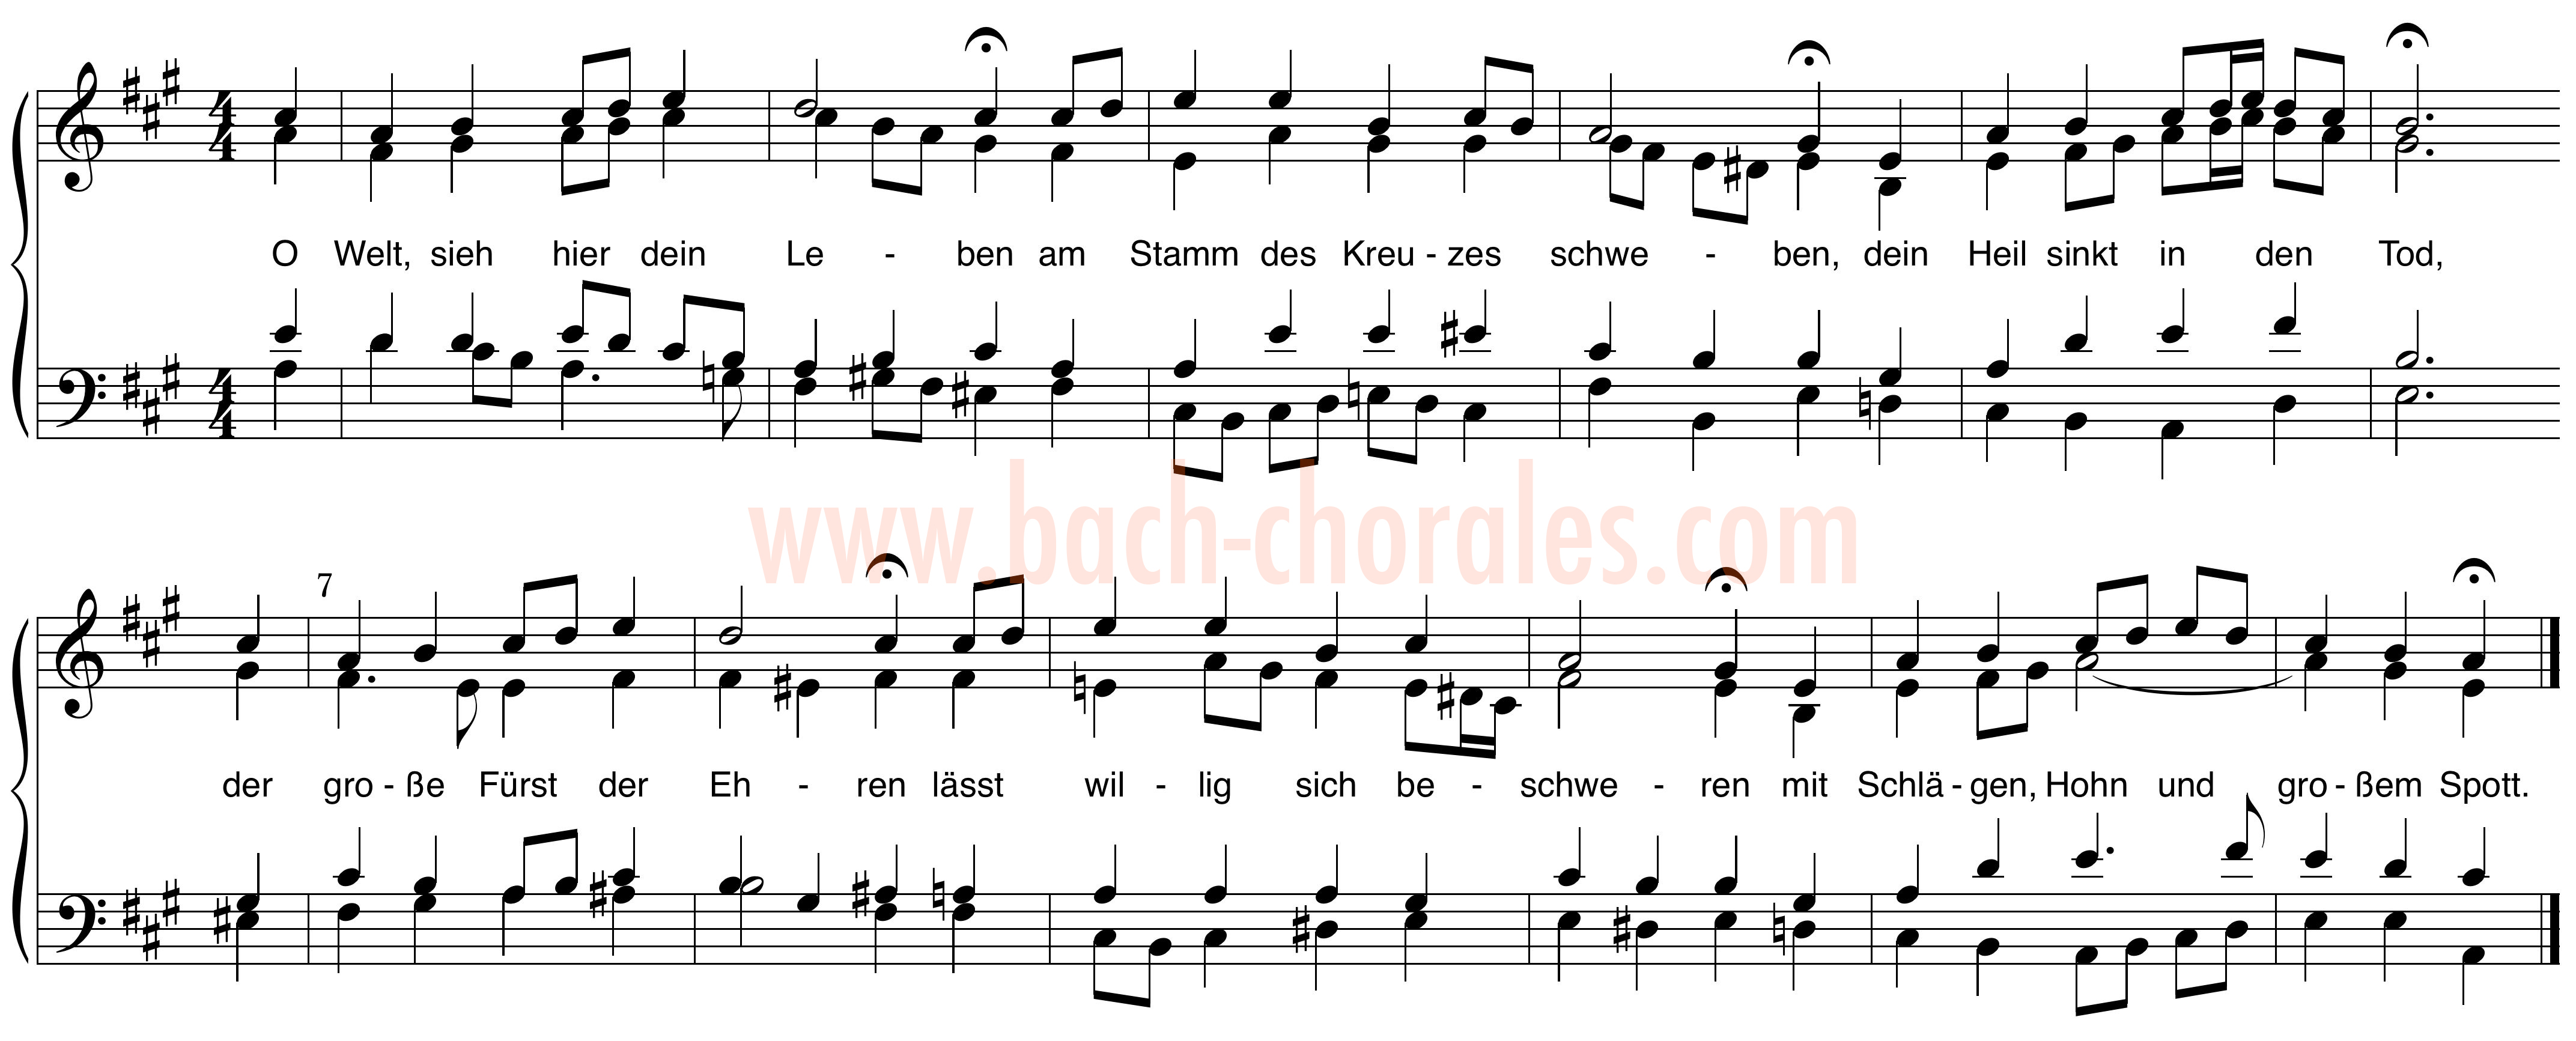 notenbeeld BWV 395 op https://www.bach-chorales.com/